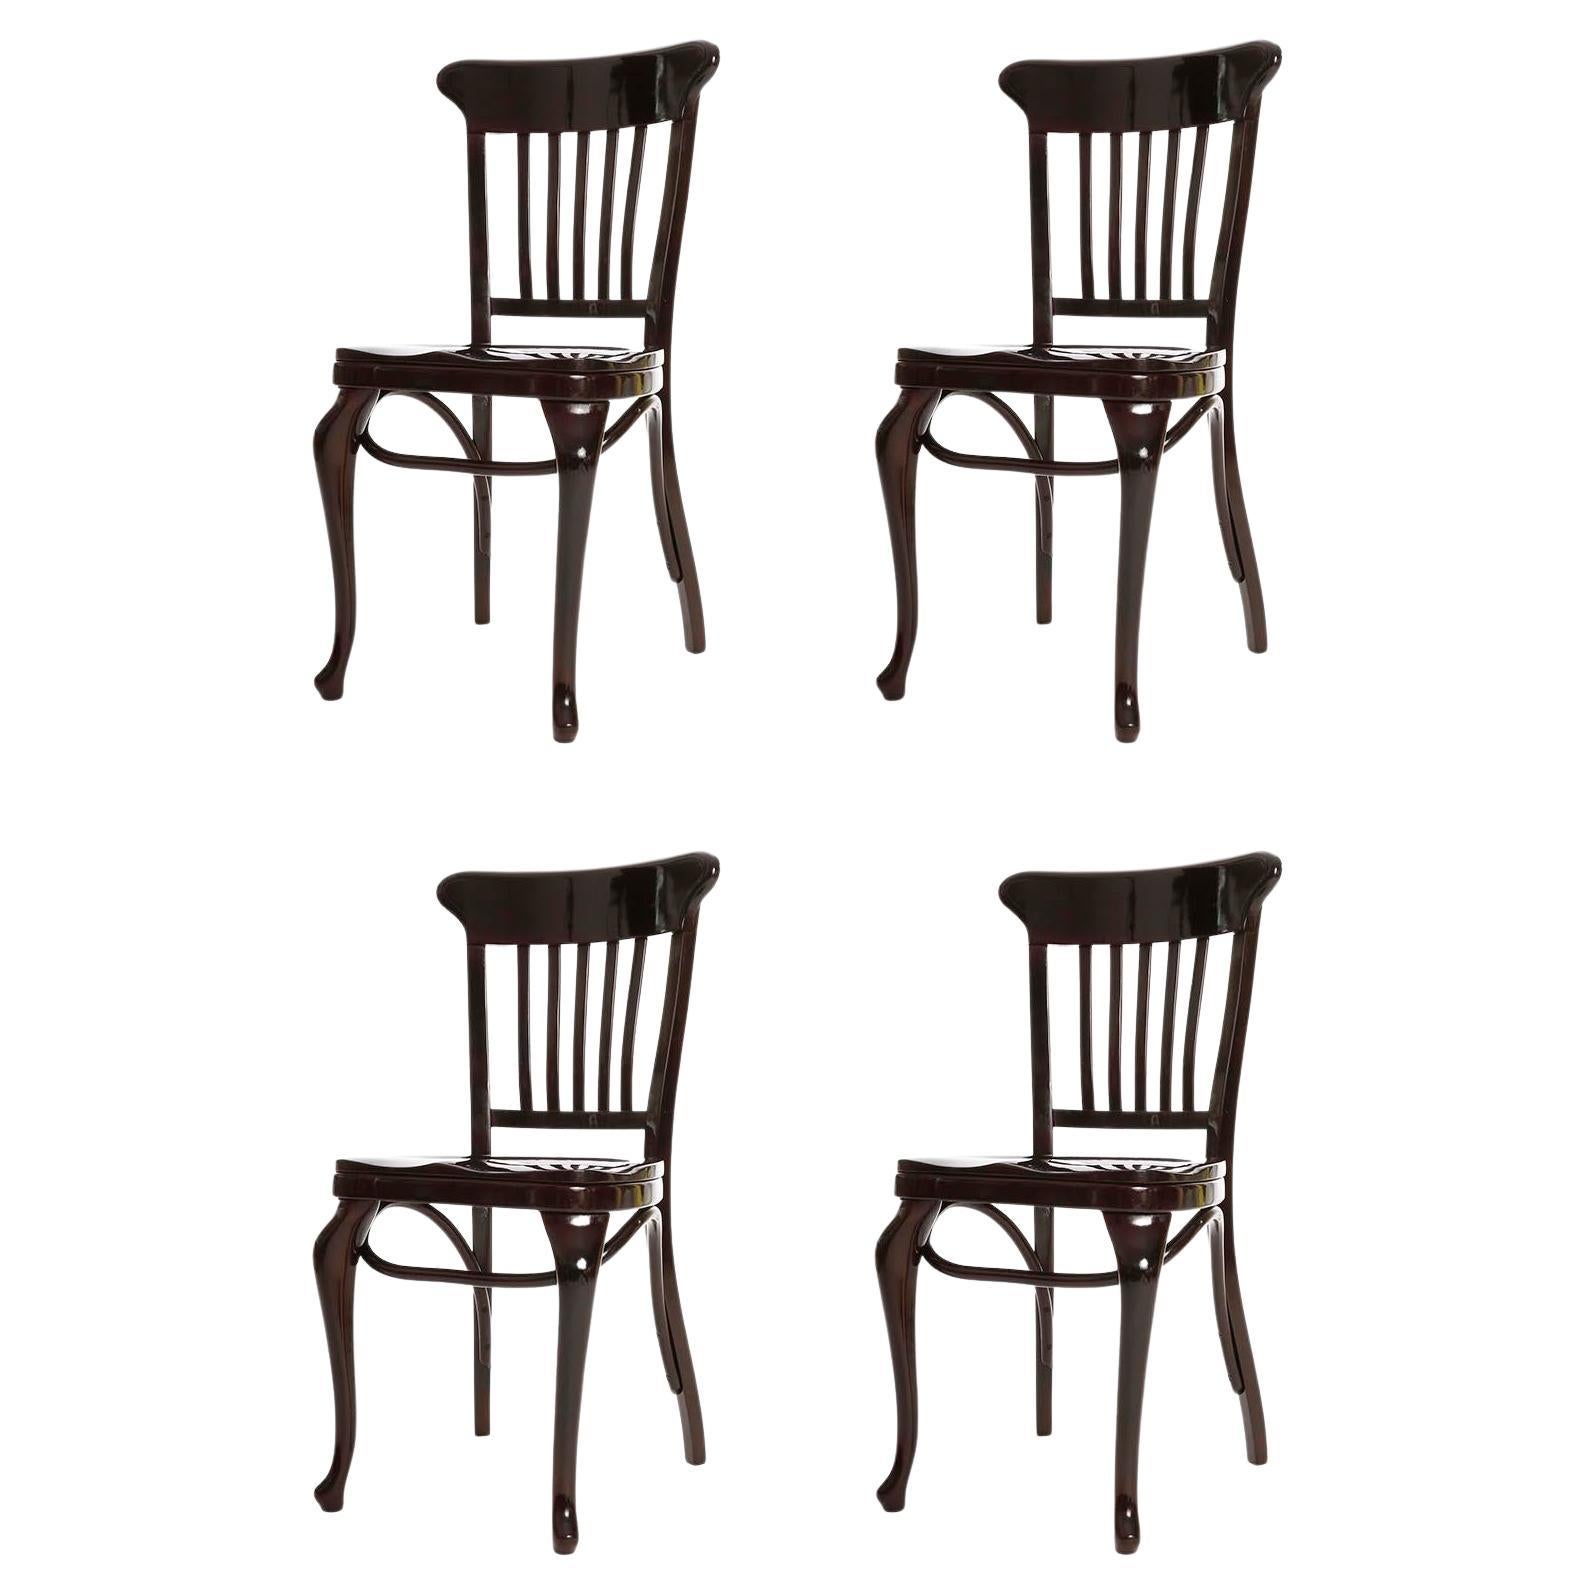 Set of Four Adolf Loos Chairs, Cafe Capua Vienna, Austria, Thonet, 1913